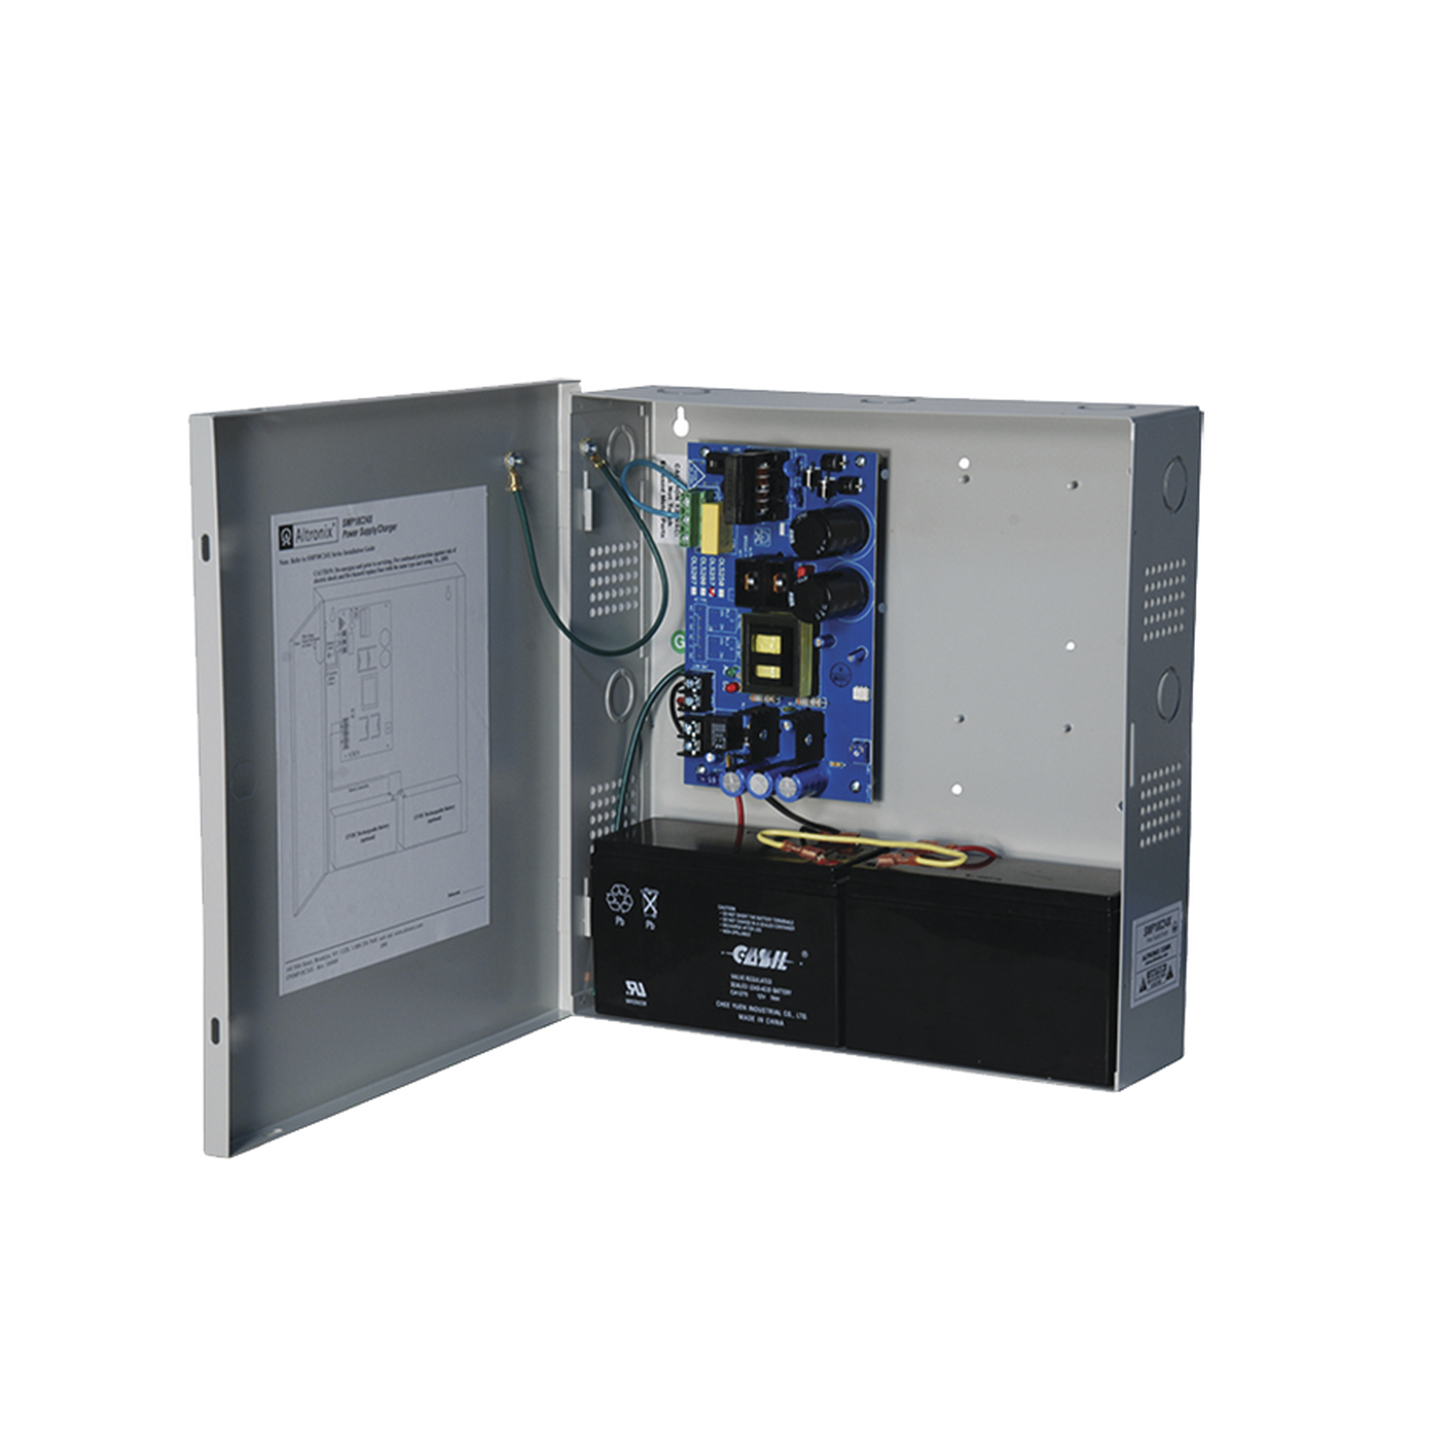 Fuente de Poder ALTRONIX de 24 Vcc @ 10 Amper / 1 salida / Ideal para aplicaciones de Control Acceso/Intrusión / CCTV / Con voltaje de entrada de 115 Vca / Con capacidad de baterías de respaldo / Requieren baterías